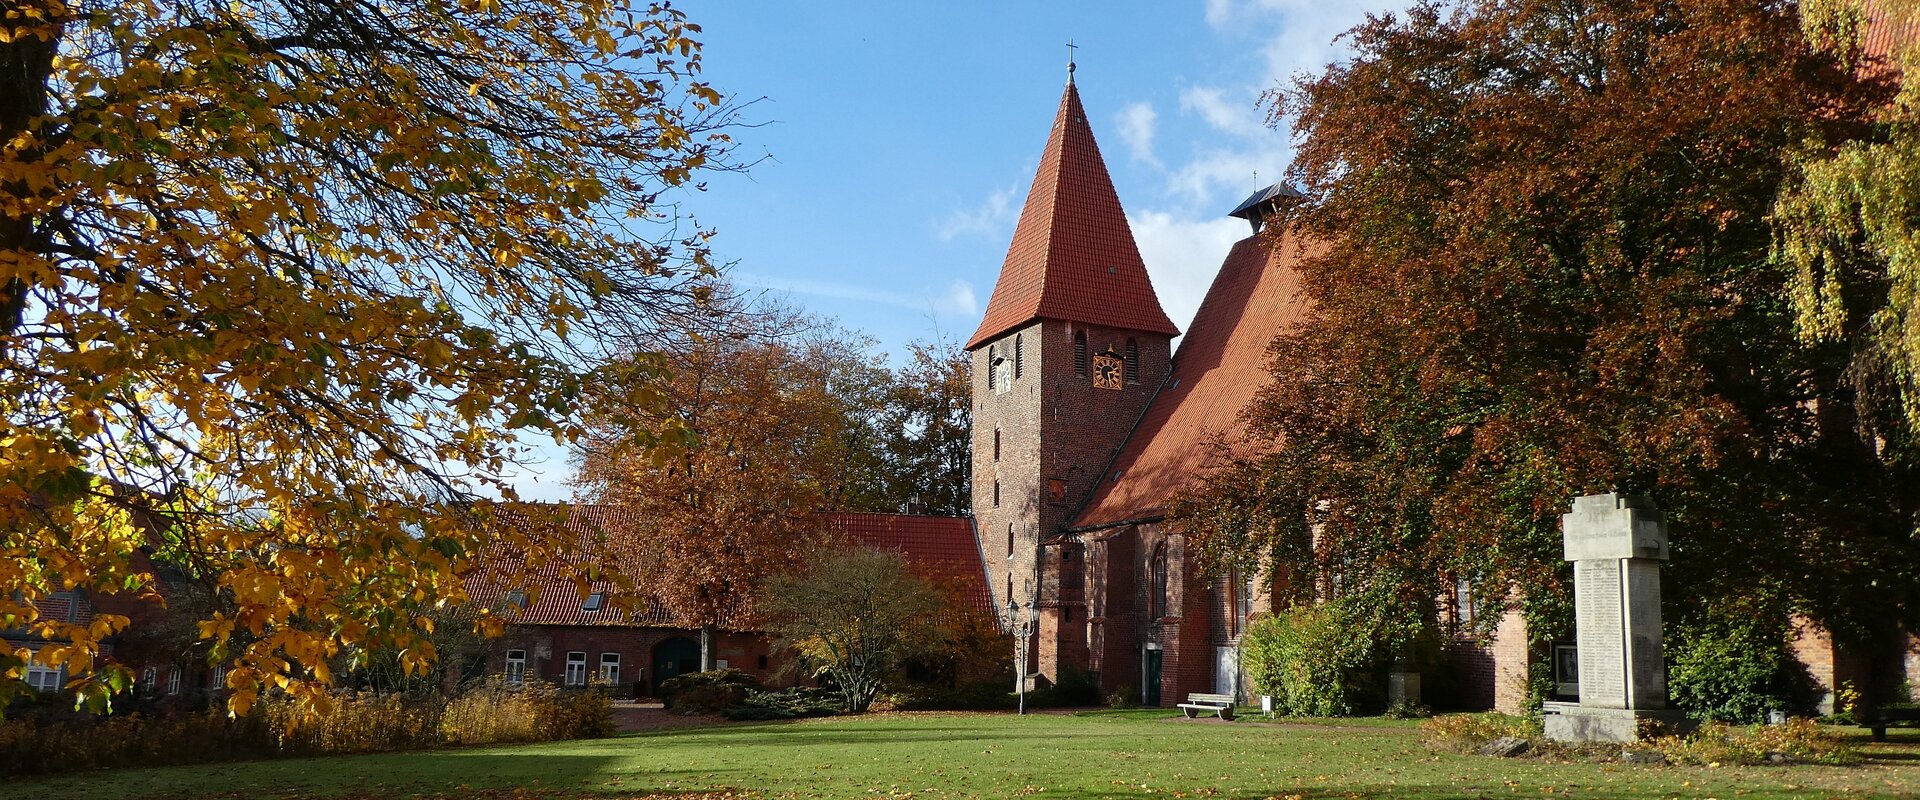 Bäume mit Herbstlaub, eine Wiese und blauer Himmel umrahmen den Kirchturm und die angrenzenden Gebäude des Klosters Ebstorfs